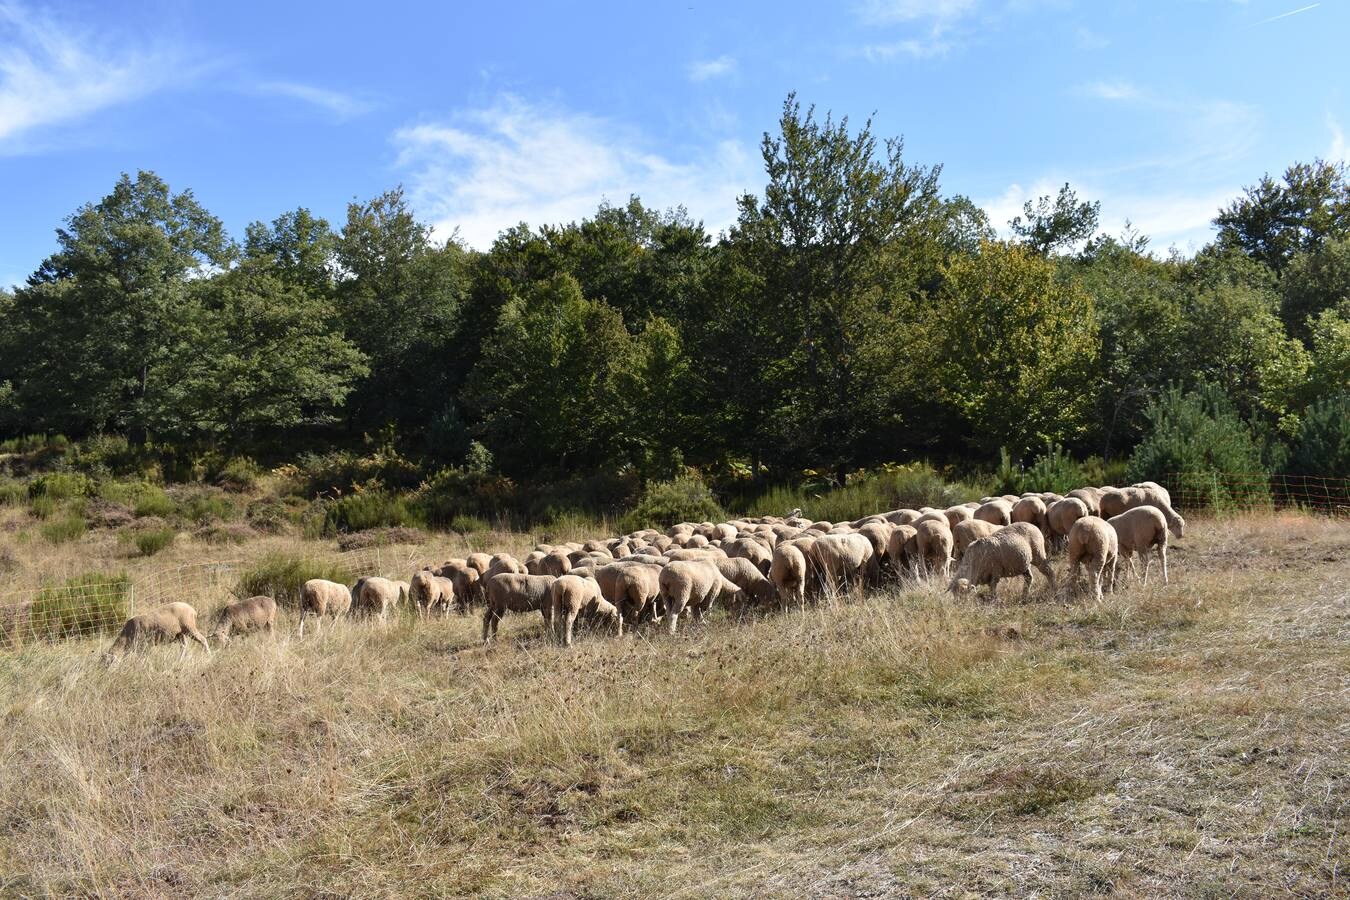 La Fiesta de la Trashumancia en la Venta de Piqueras reivindicó el legado pastoril de la comarca y lo divulgó entre los niños